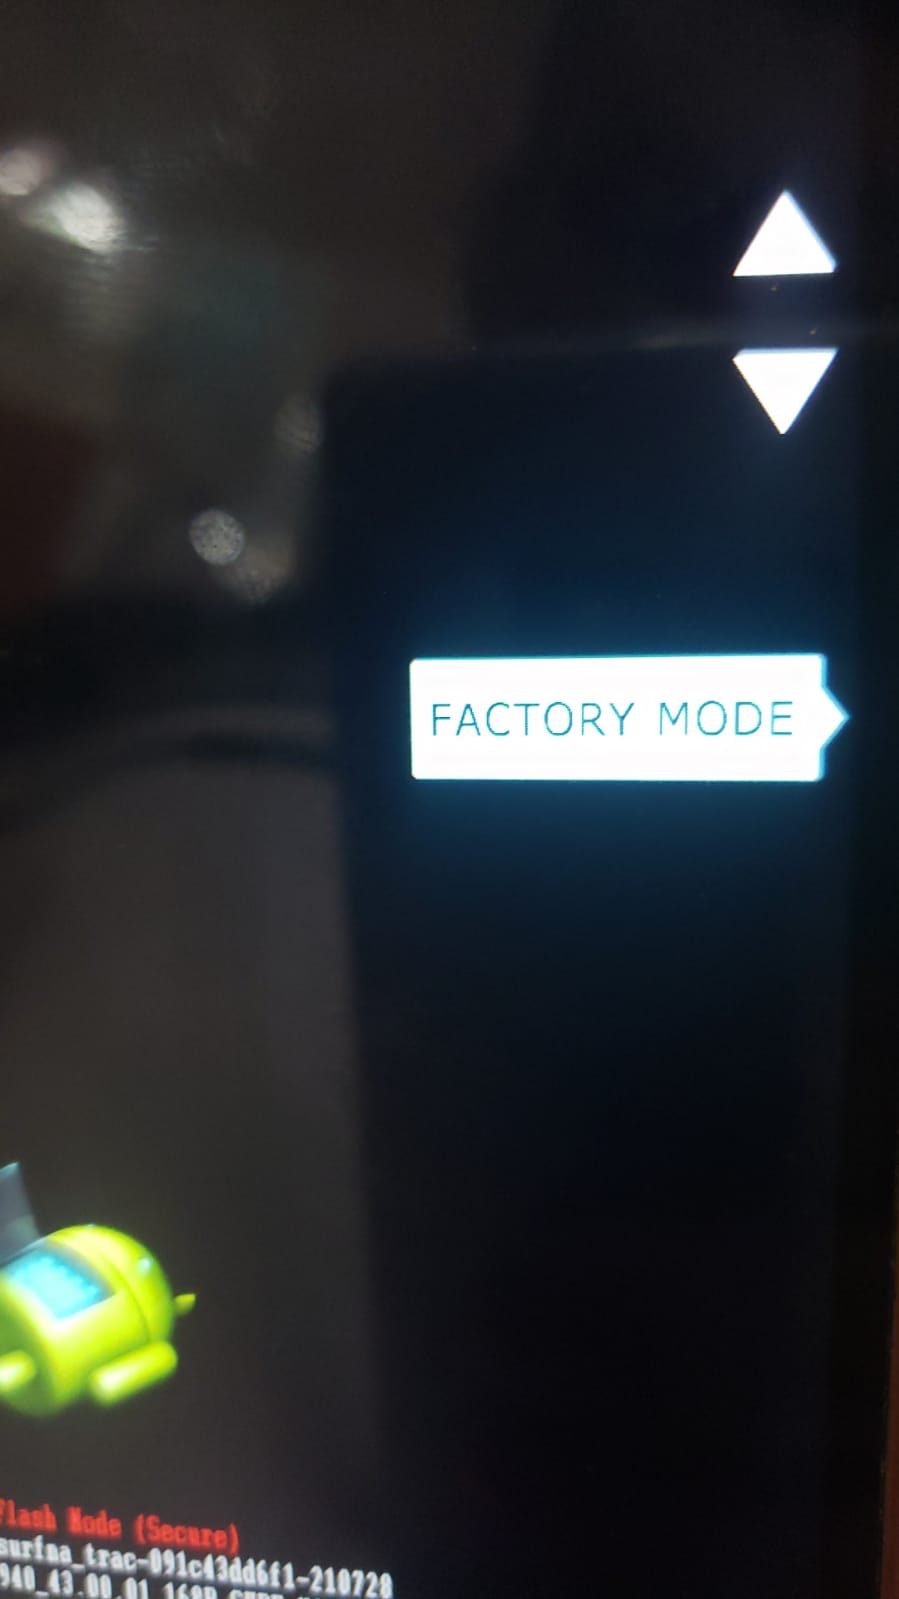 modo factory mode